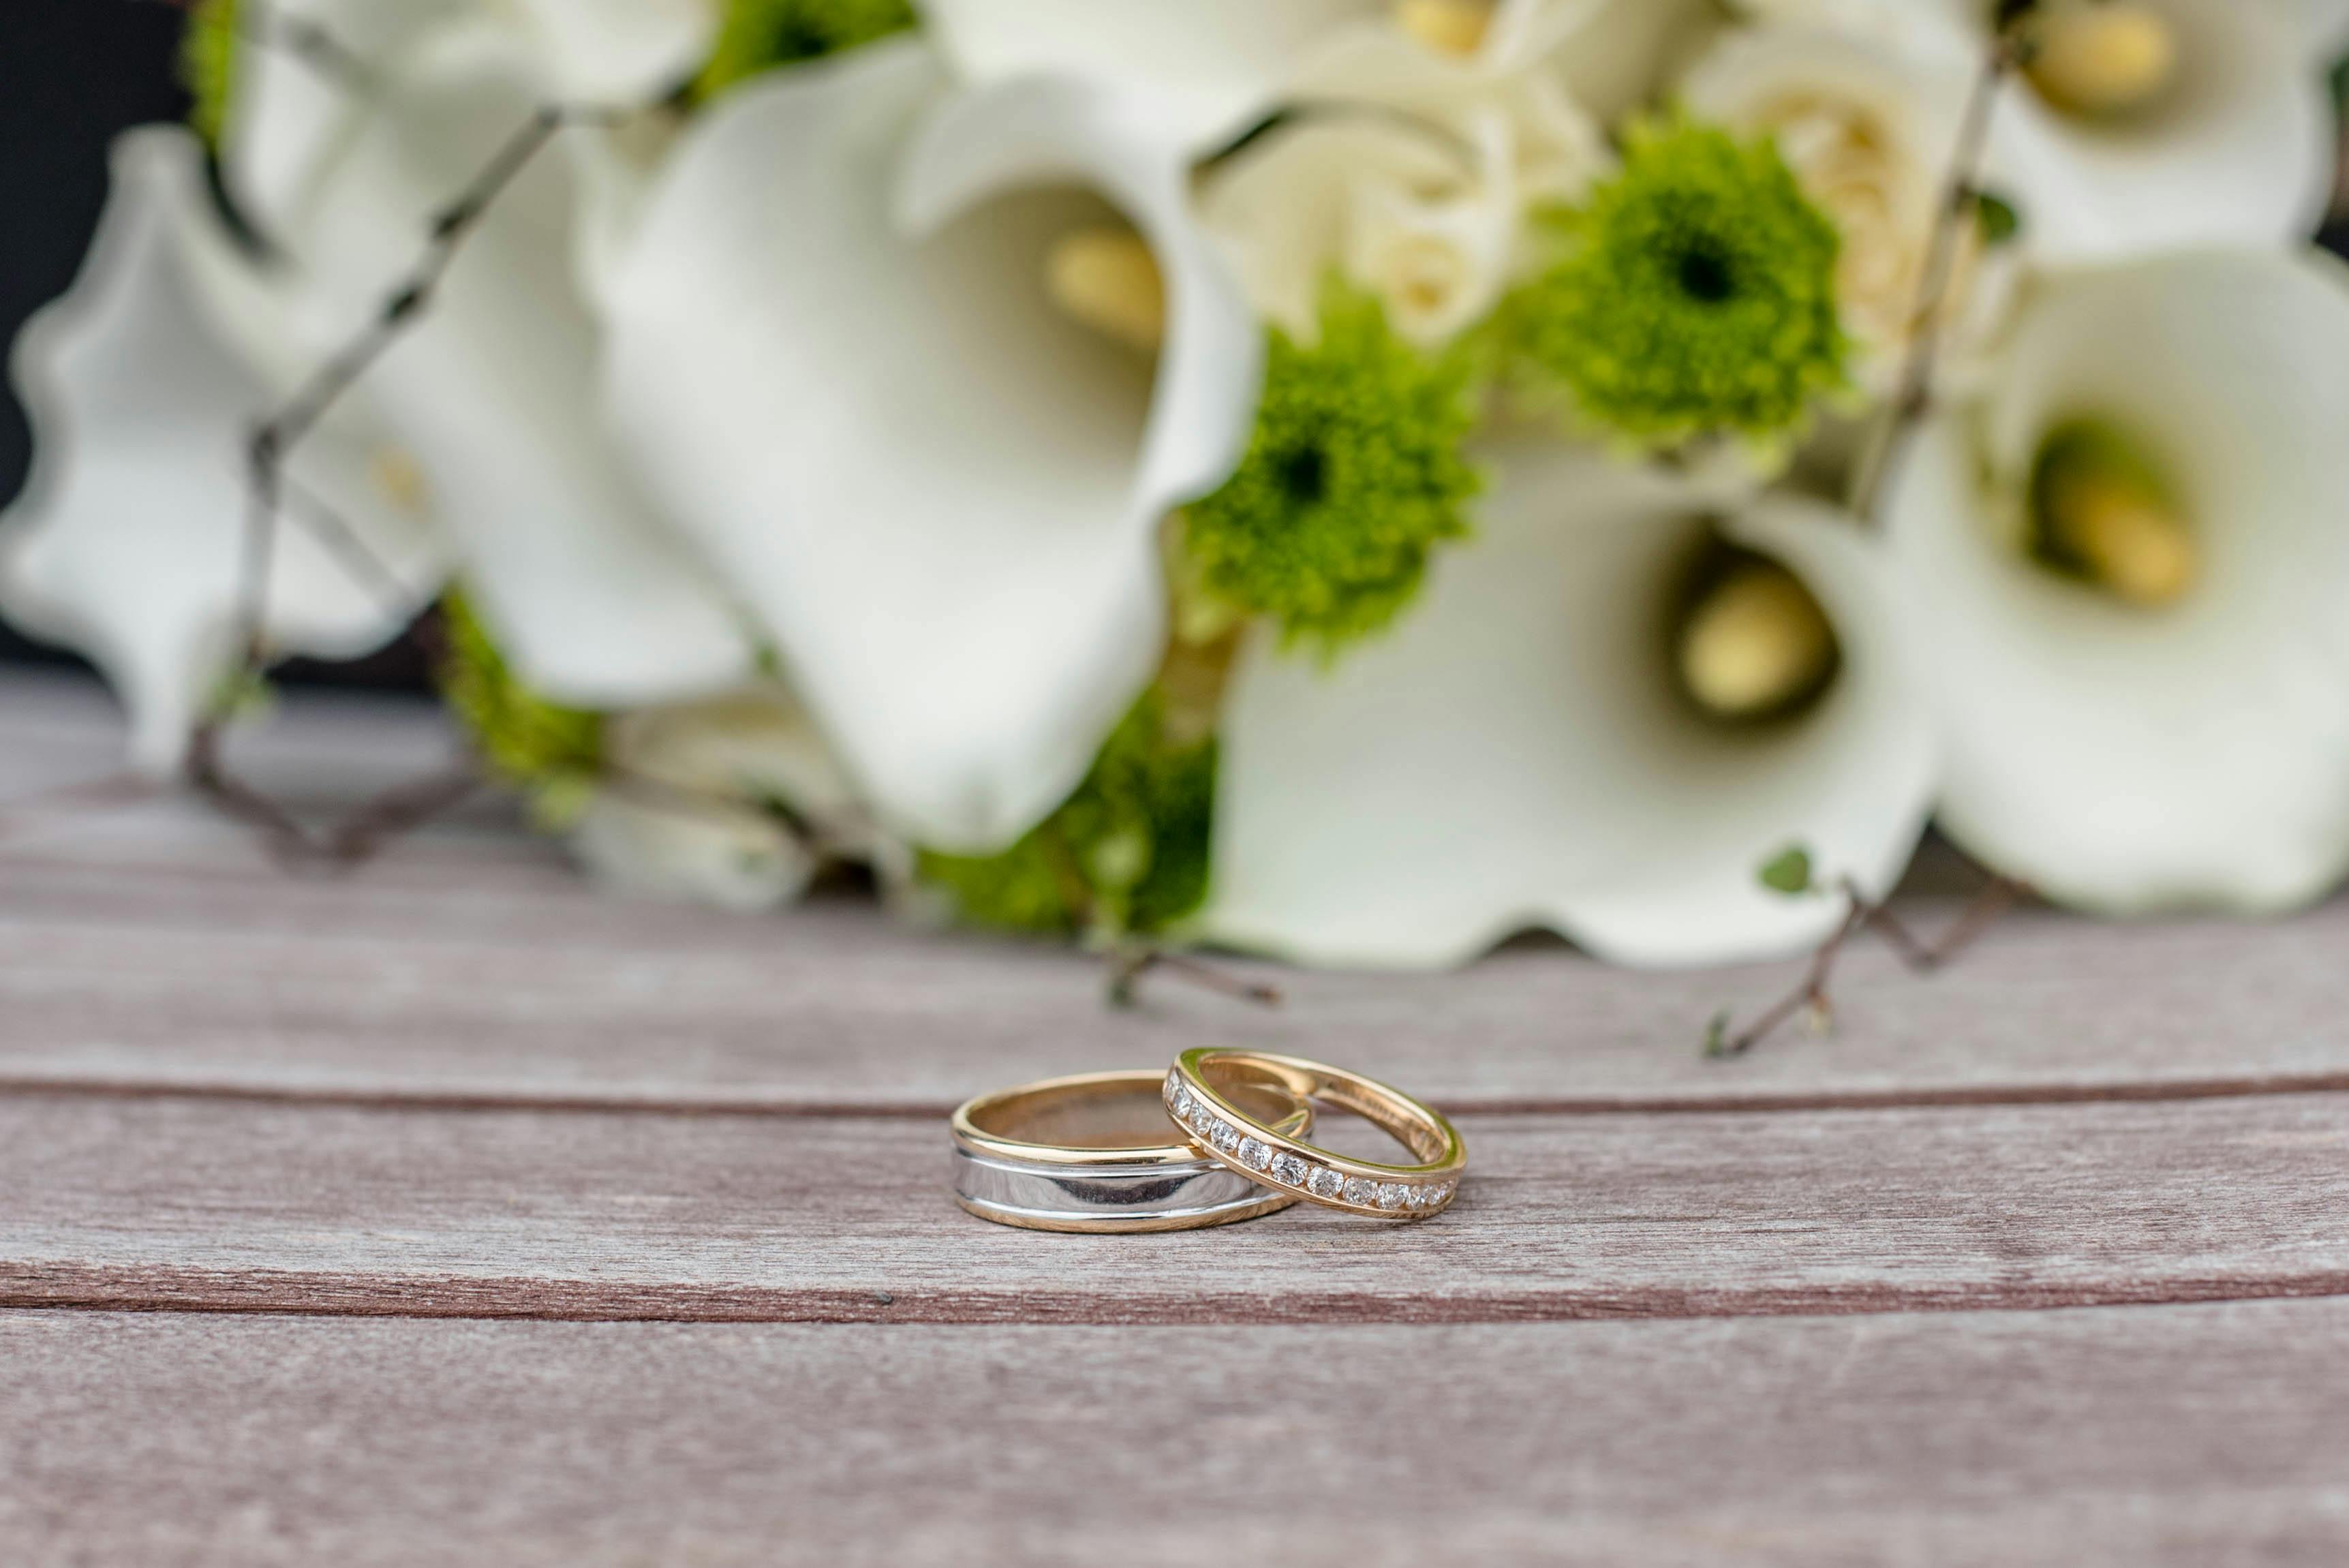 Nhẫn cưới: Hãy khám phá ngay hình ảnh những chiếc nhẫn cưới đẹp mê hồn để tạo nên sự trọn vẹn cho ngày trọng đại của bạn. Với rất nhiều lựa chọn về kiểu dáng, chất liệu và màu sắc, chắc chắn bạn sẽ tìm được chiếc nhẫn ưng ý nhất.